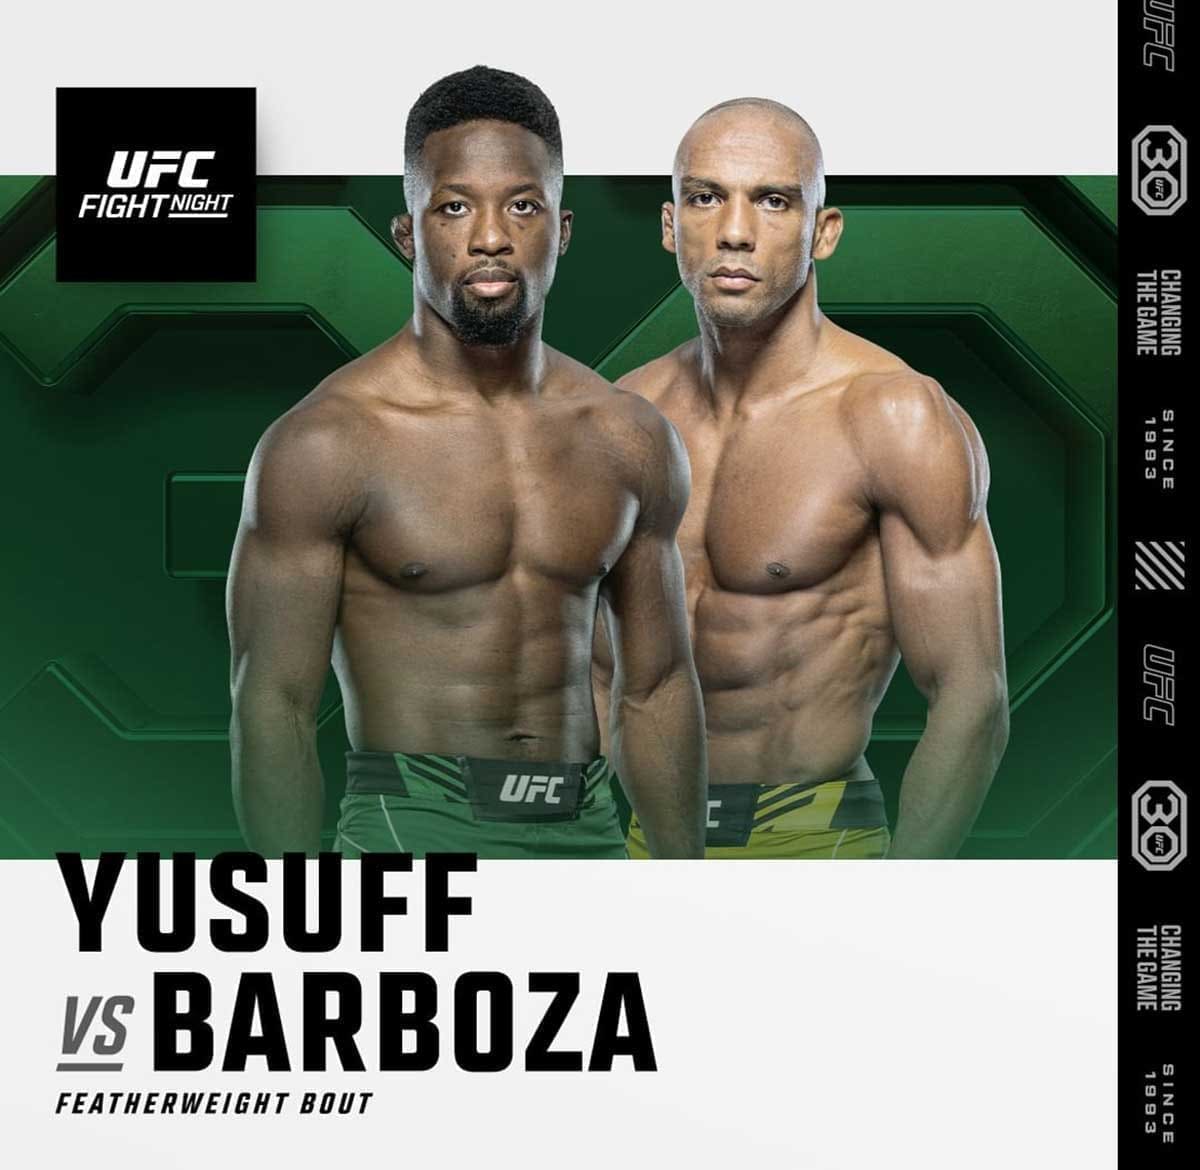 UFC Fight Night 230: Юсуфф - Барбоза дата проведения, кард, участники и результаты